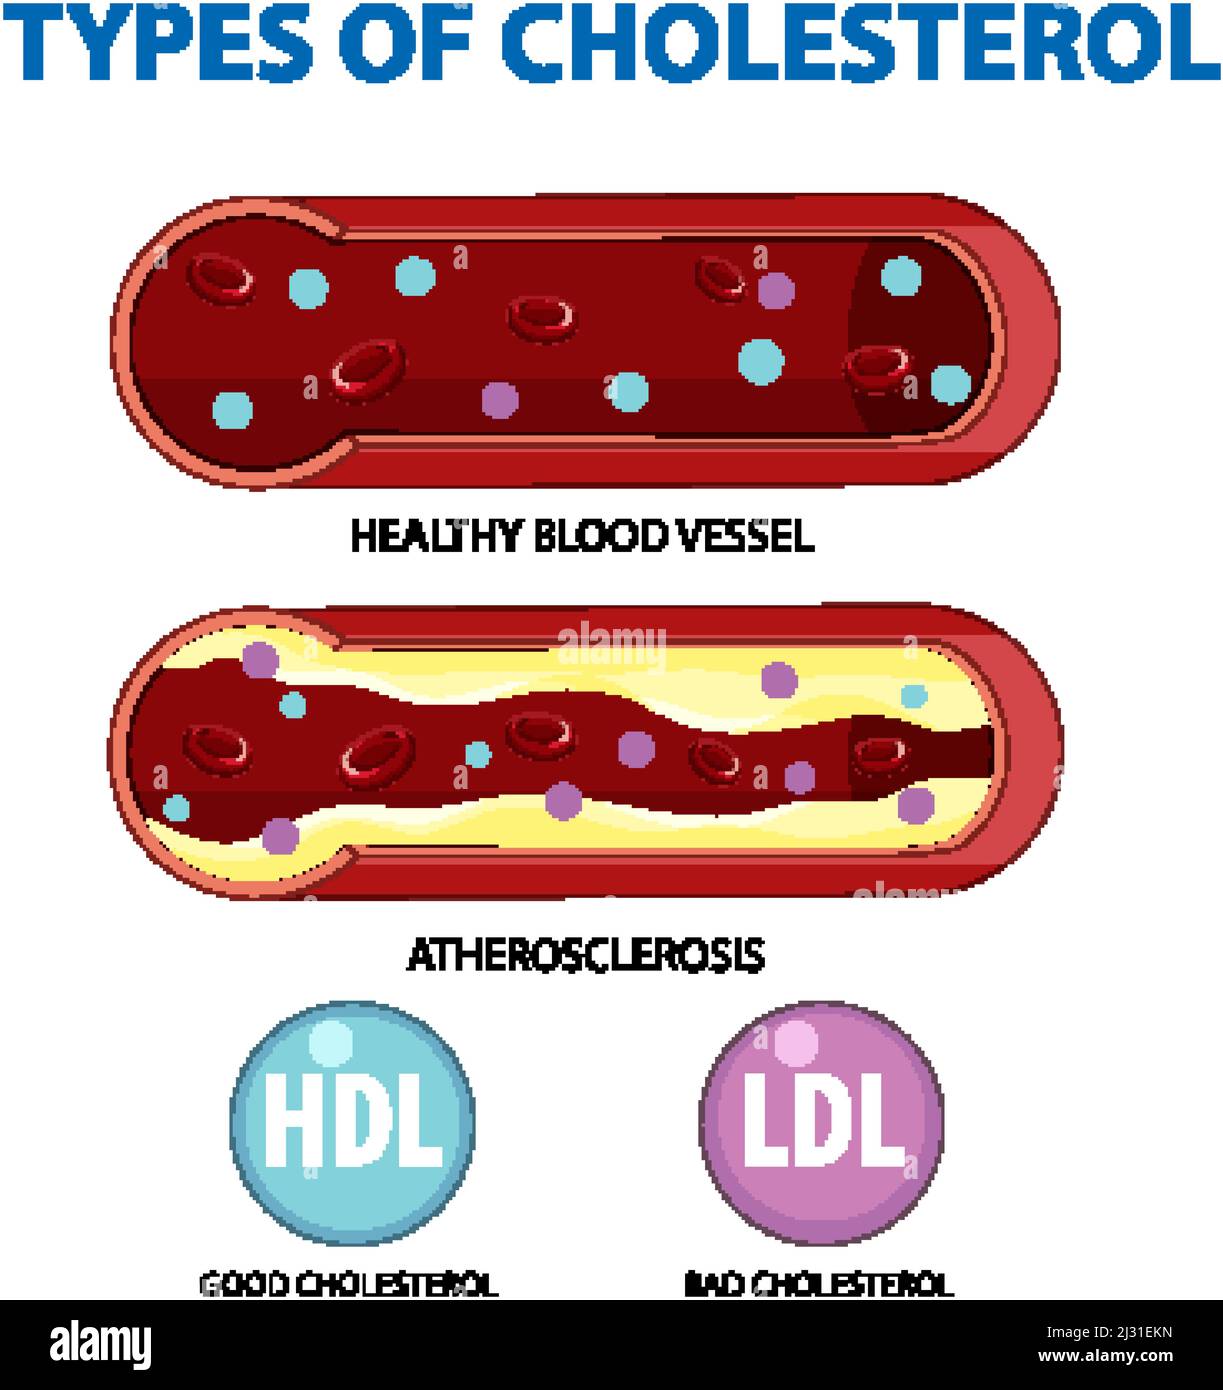 Types de cholestérol HDL et LDL illustration Image Vectorielle ...